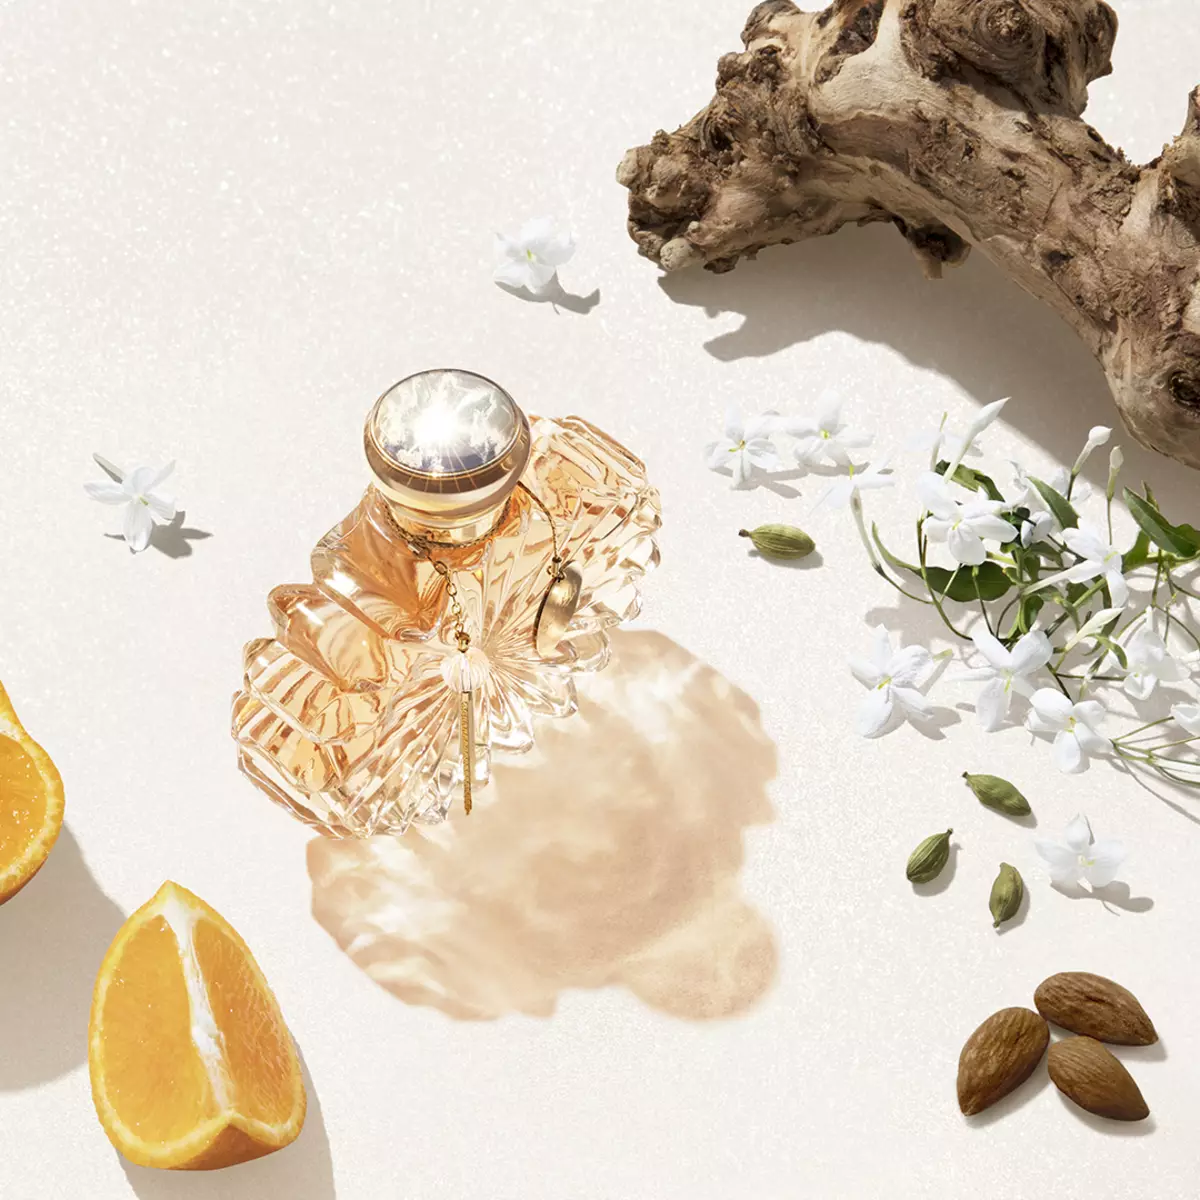 Άρωμα Lalique: Θηλυκό άρωμα, Αμέθυστος και L'Amour, Satine, Soleil και Living, Φρούτα Du Muvement 1977 και Perles de Lalique, σχόλια 25307_16